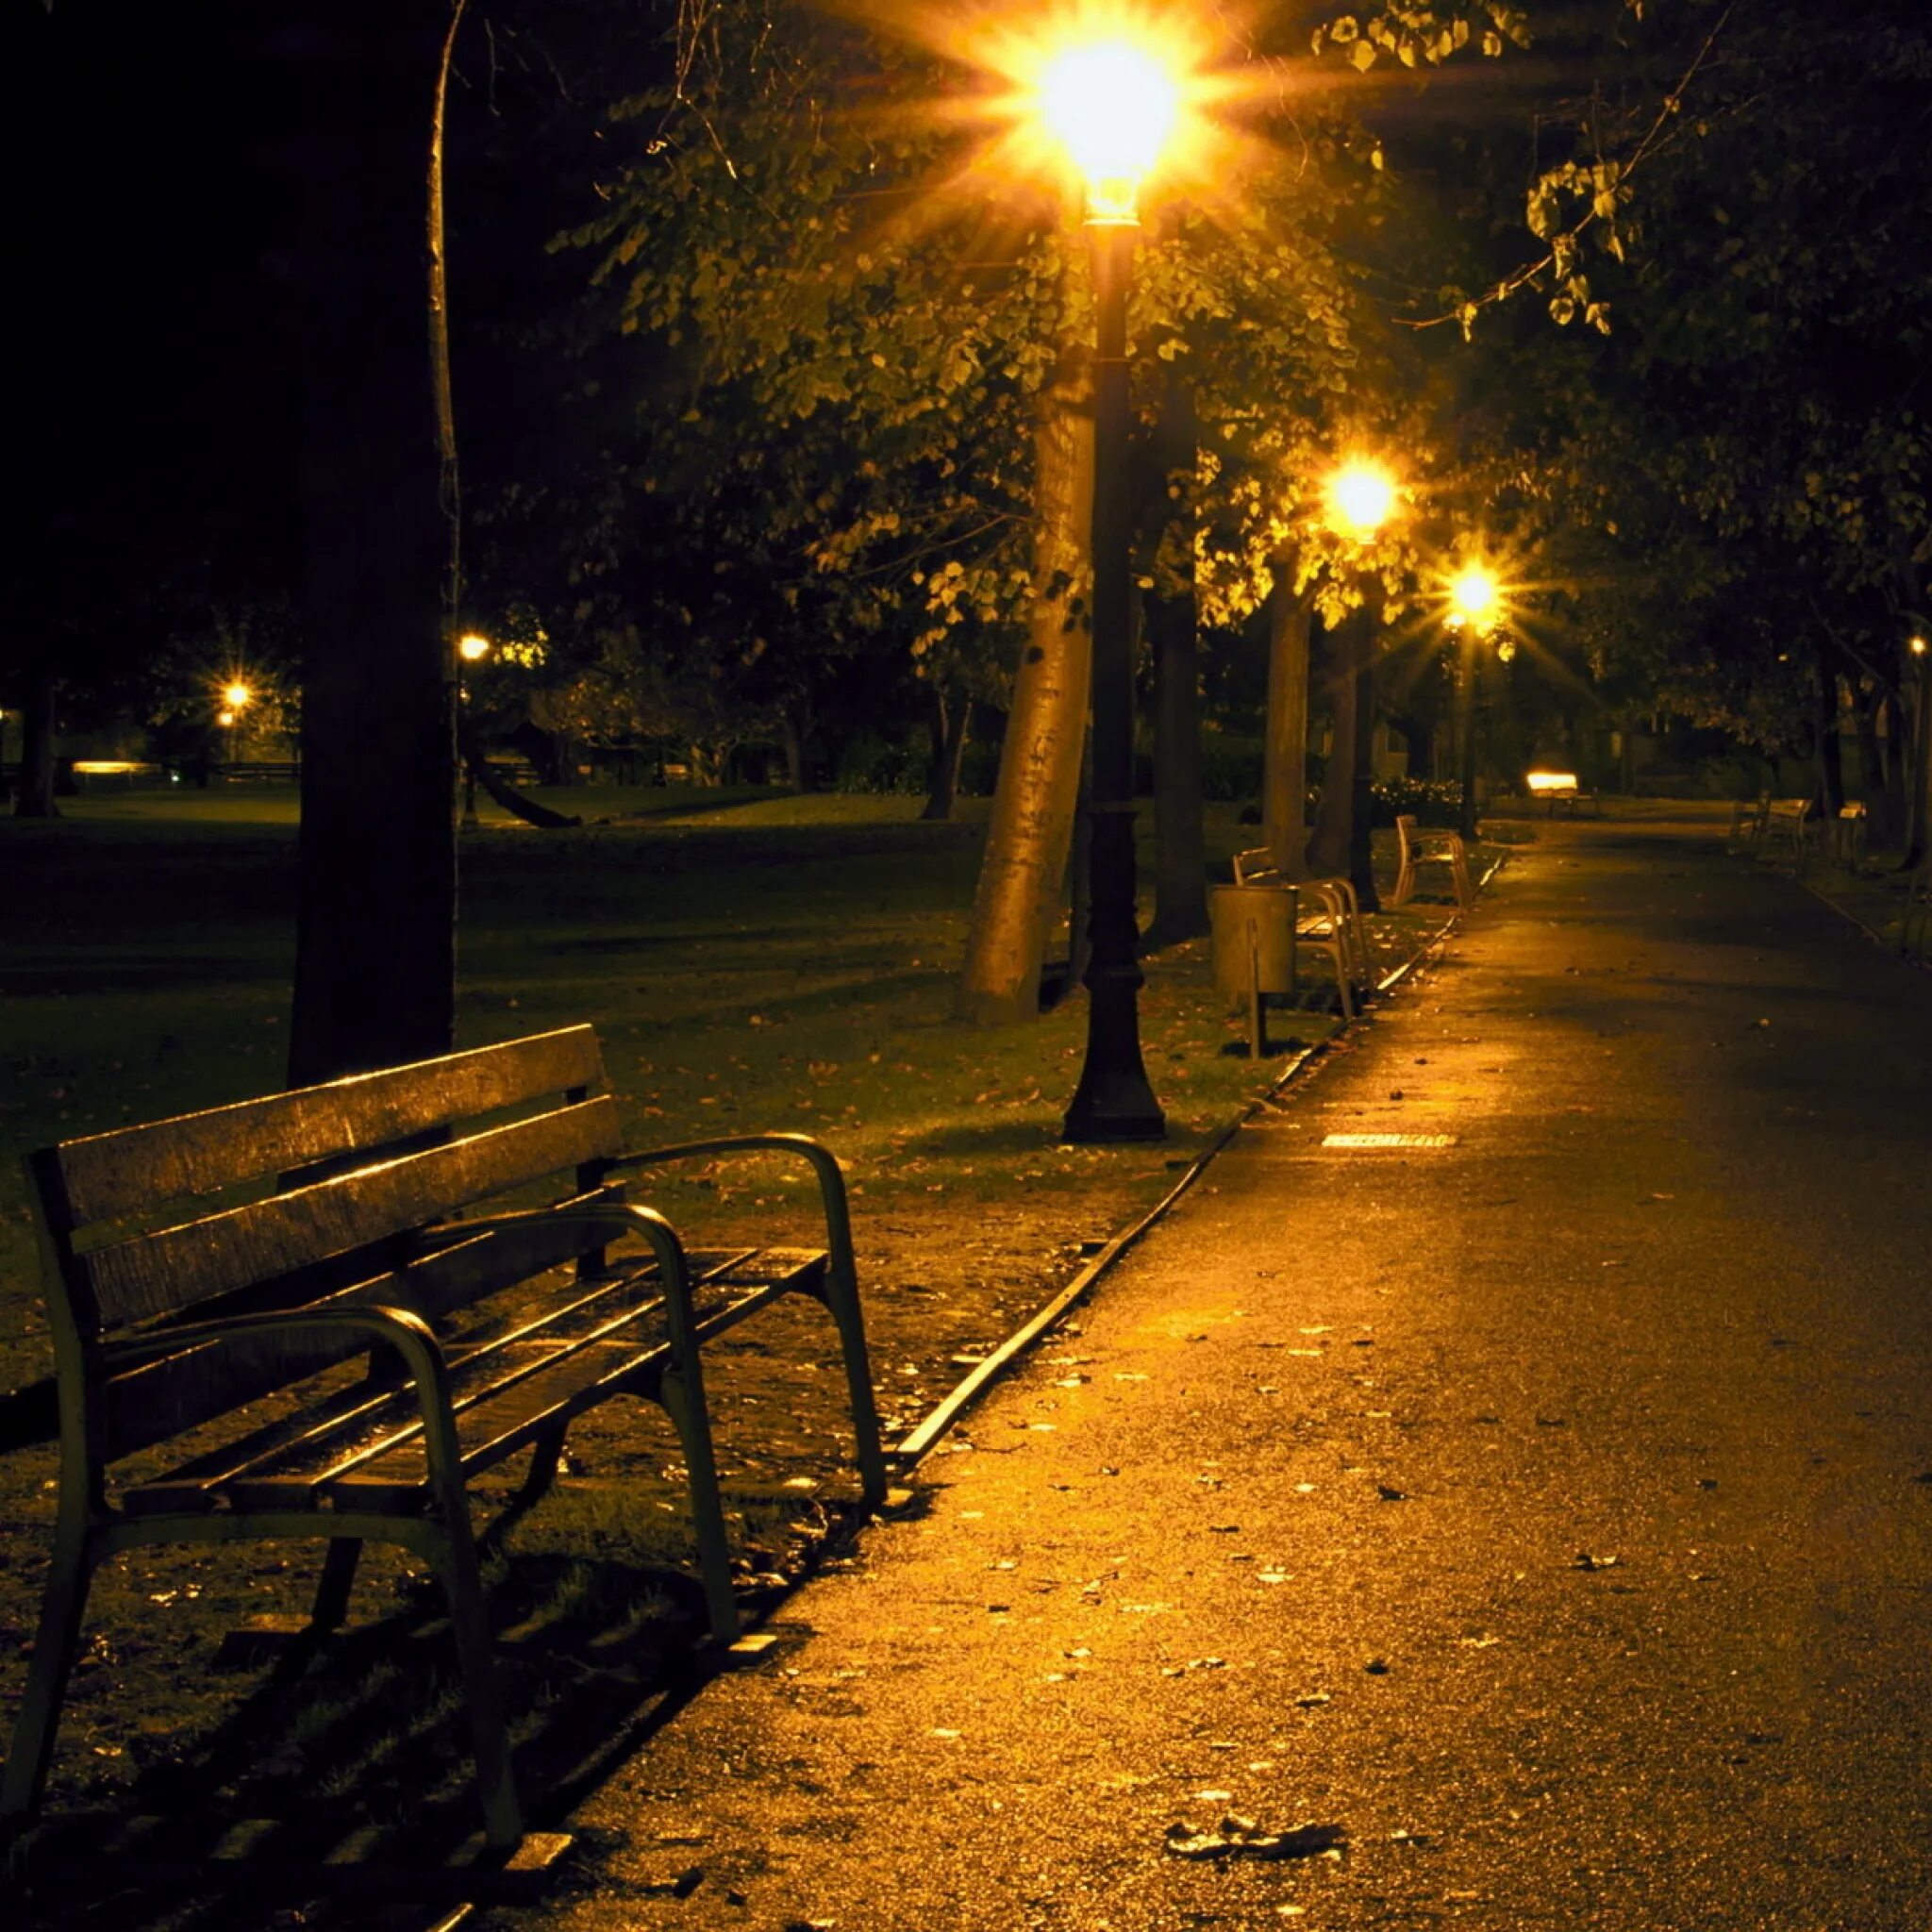 Аллея ночью. Улица вечером. Ночная улица в парке. Парк вечером. Улица ночью весной